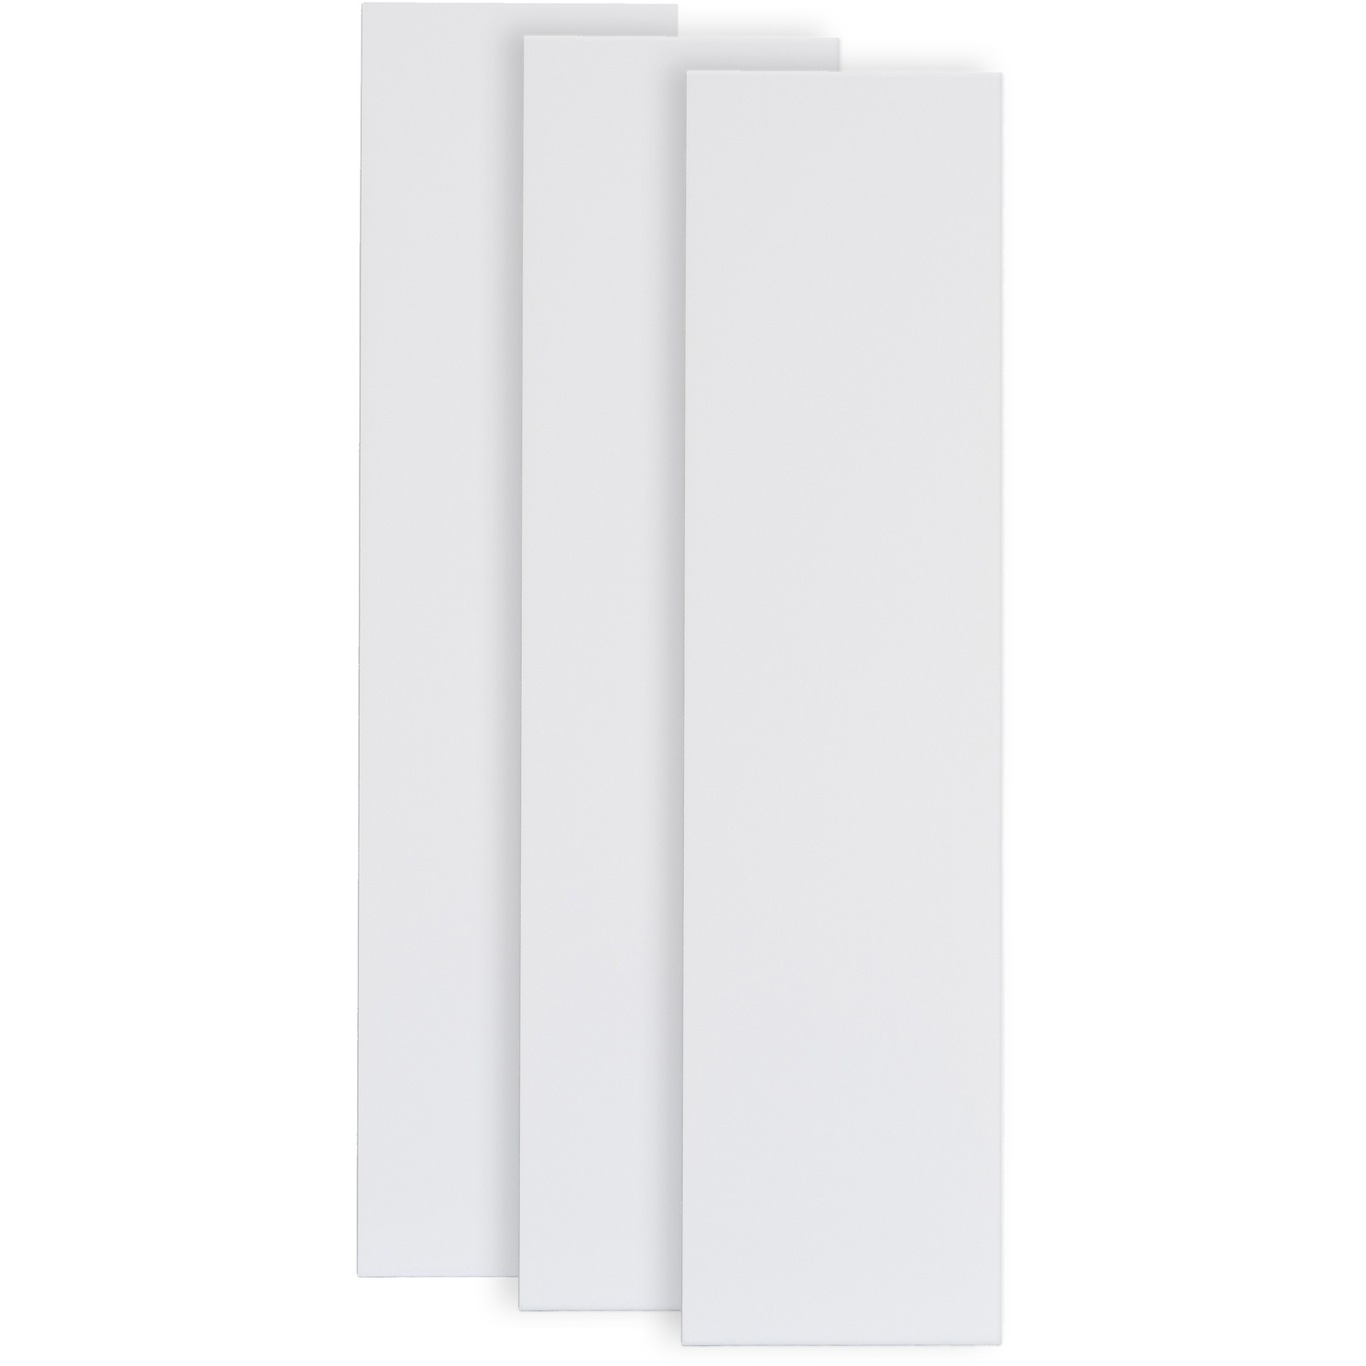 Pythagoras Shelf 3-pack, White